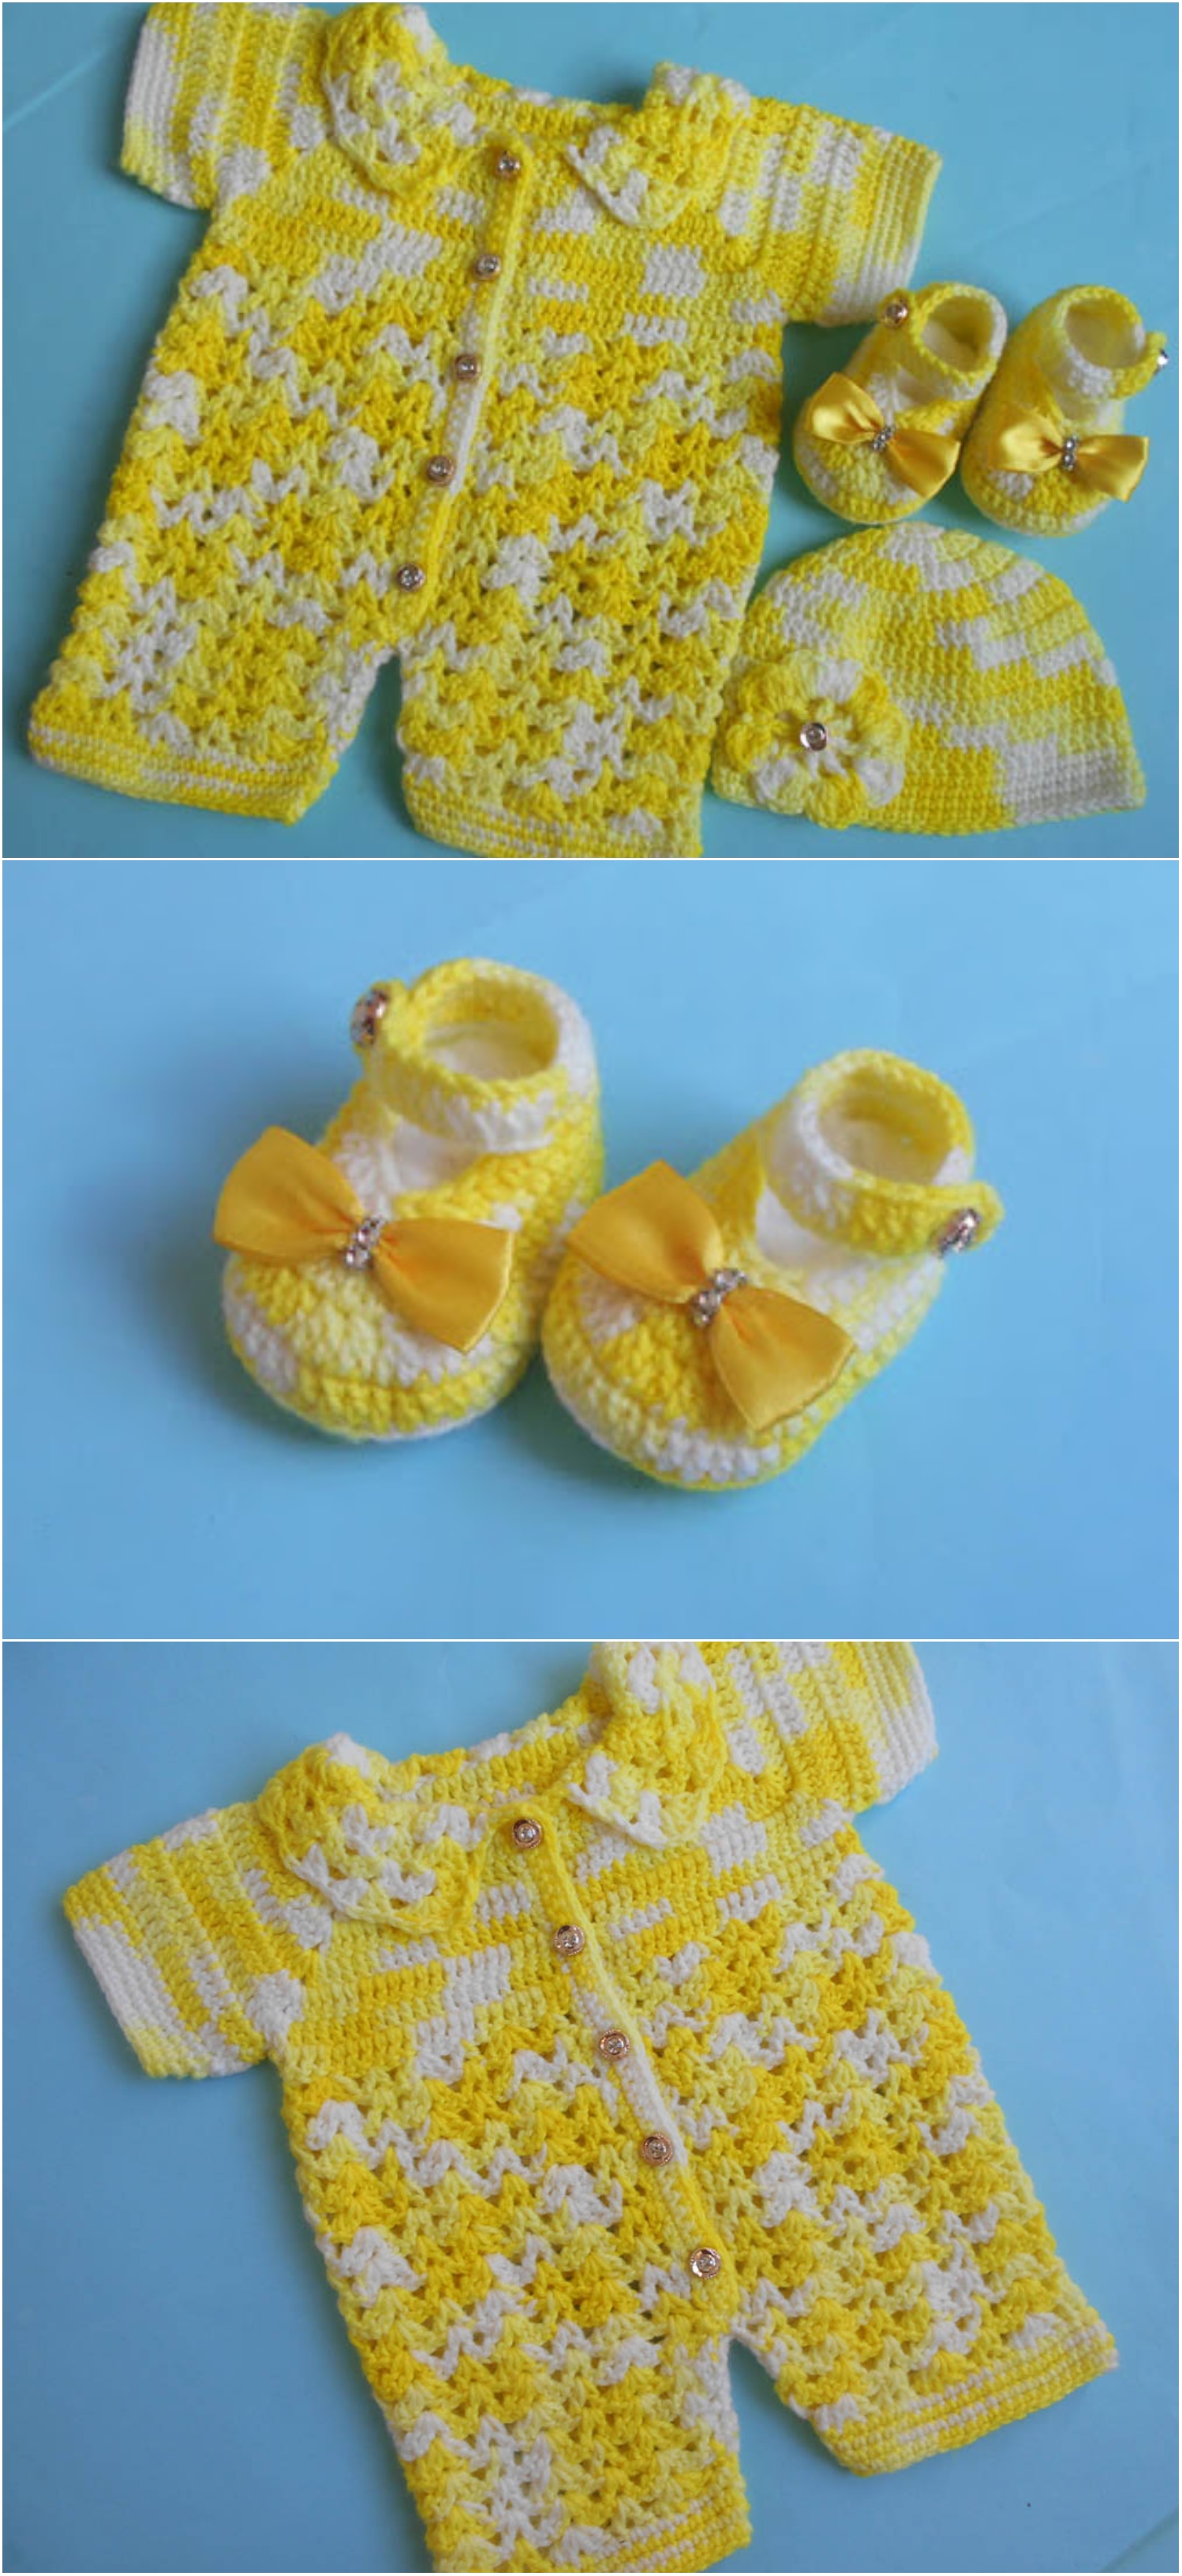 Crochet Baby Romper And Booties Set